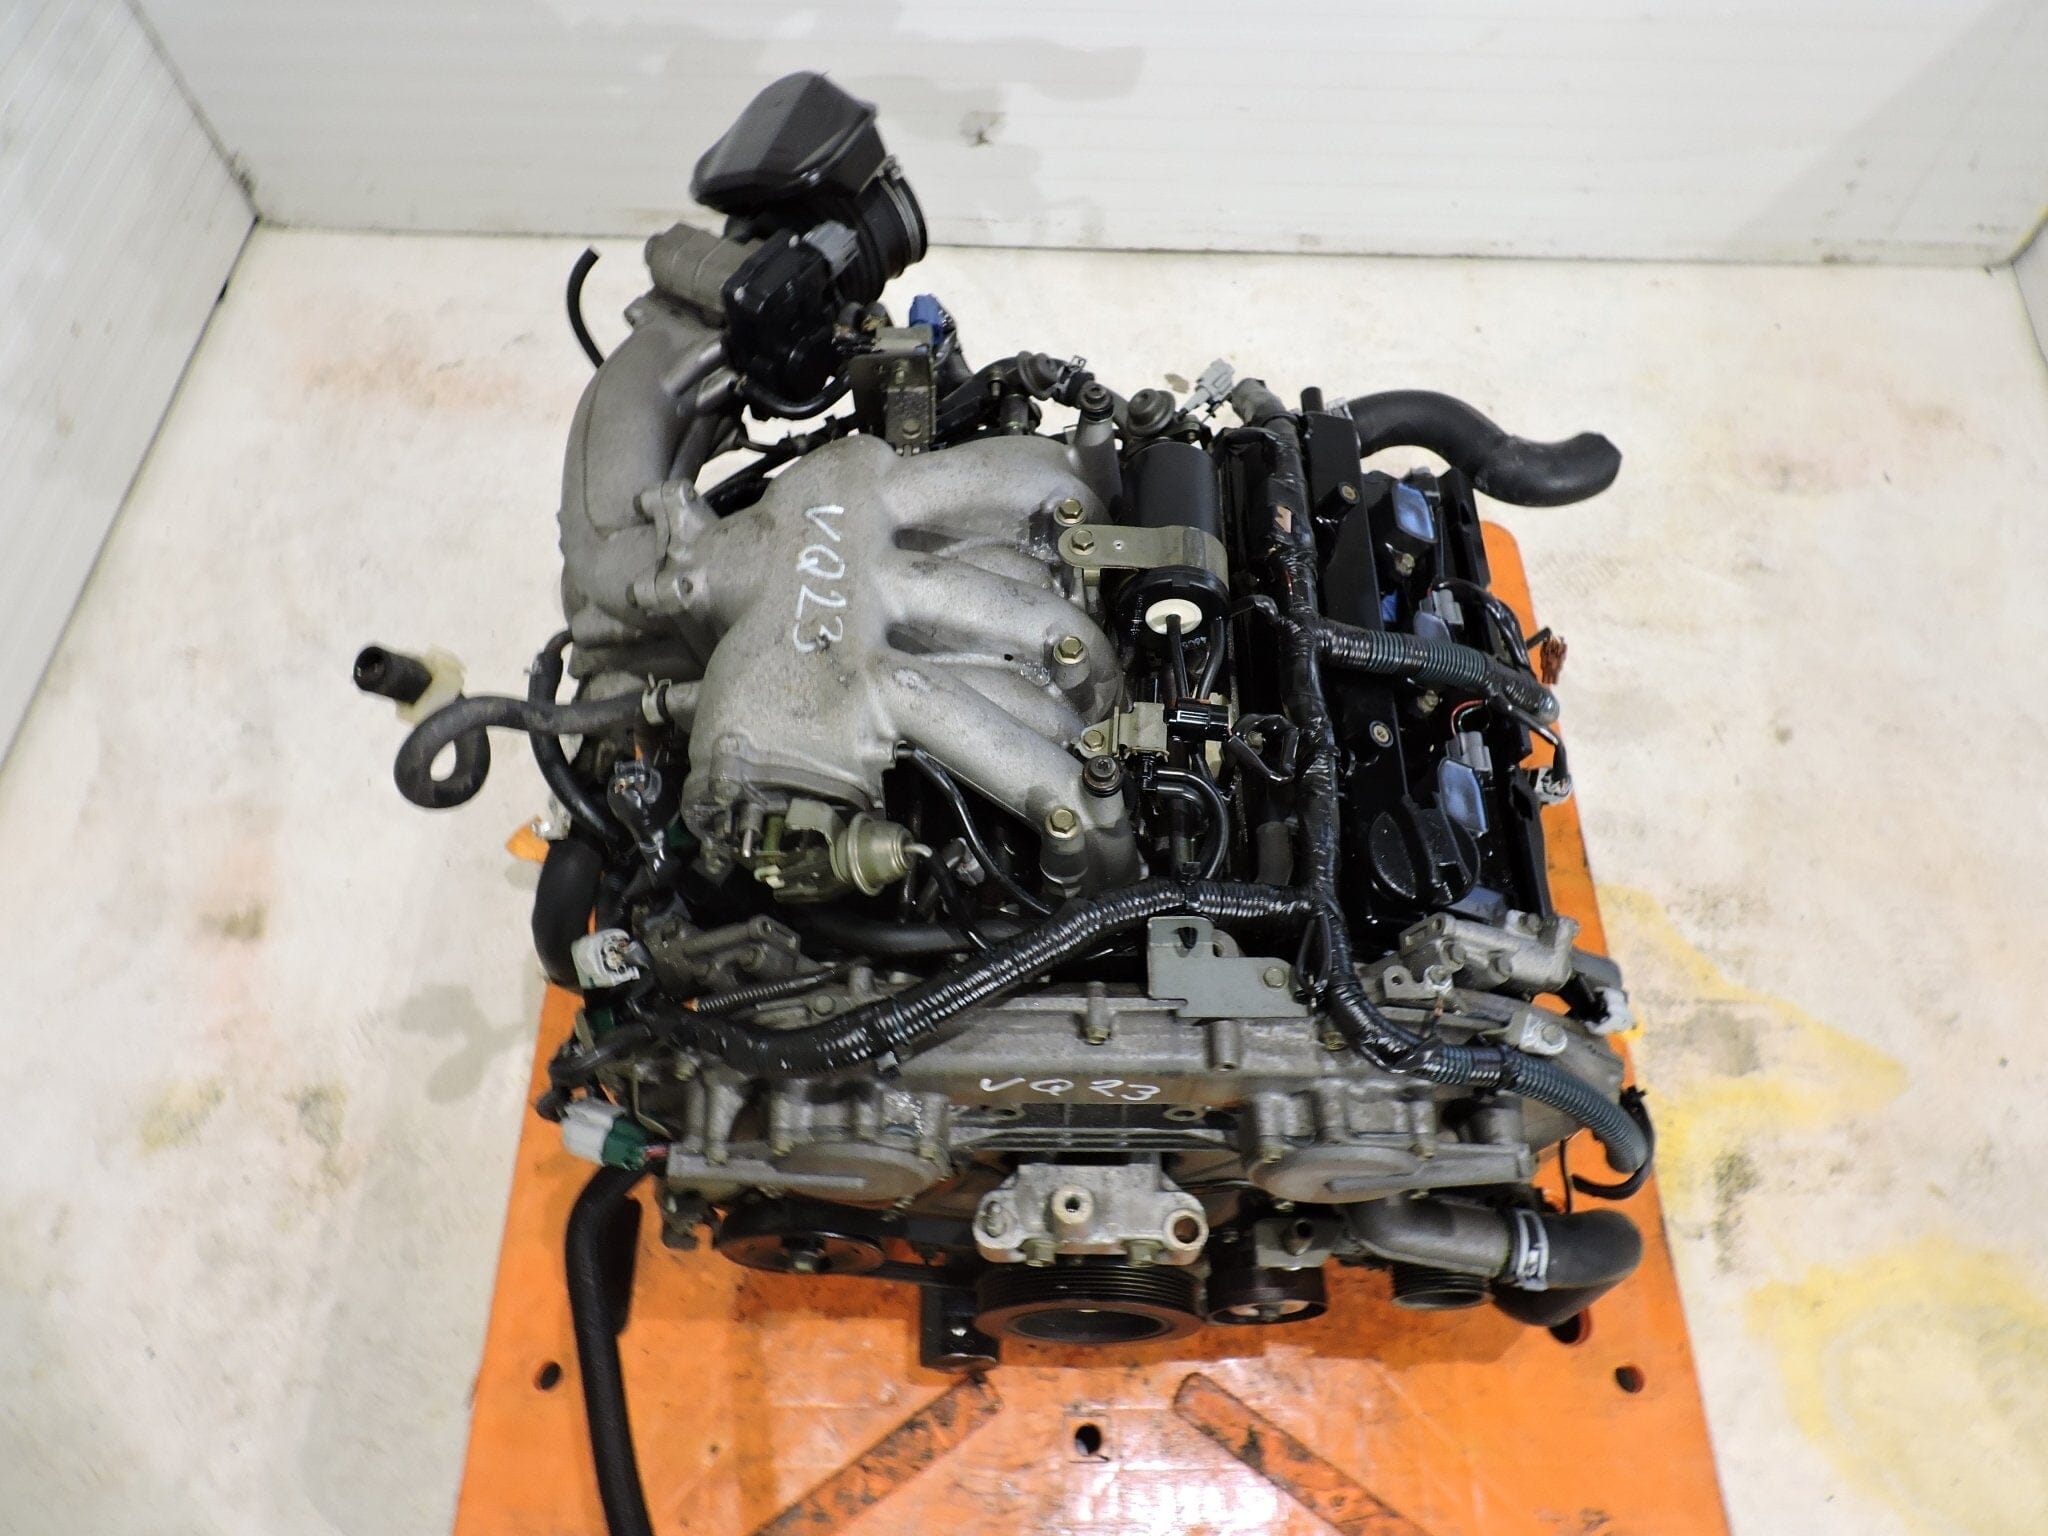 Nissan Maxima 2003-2004 2.3L JDM Replacement Engine - VQ23DE